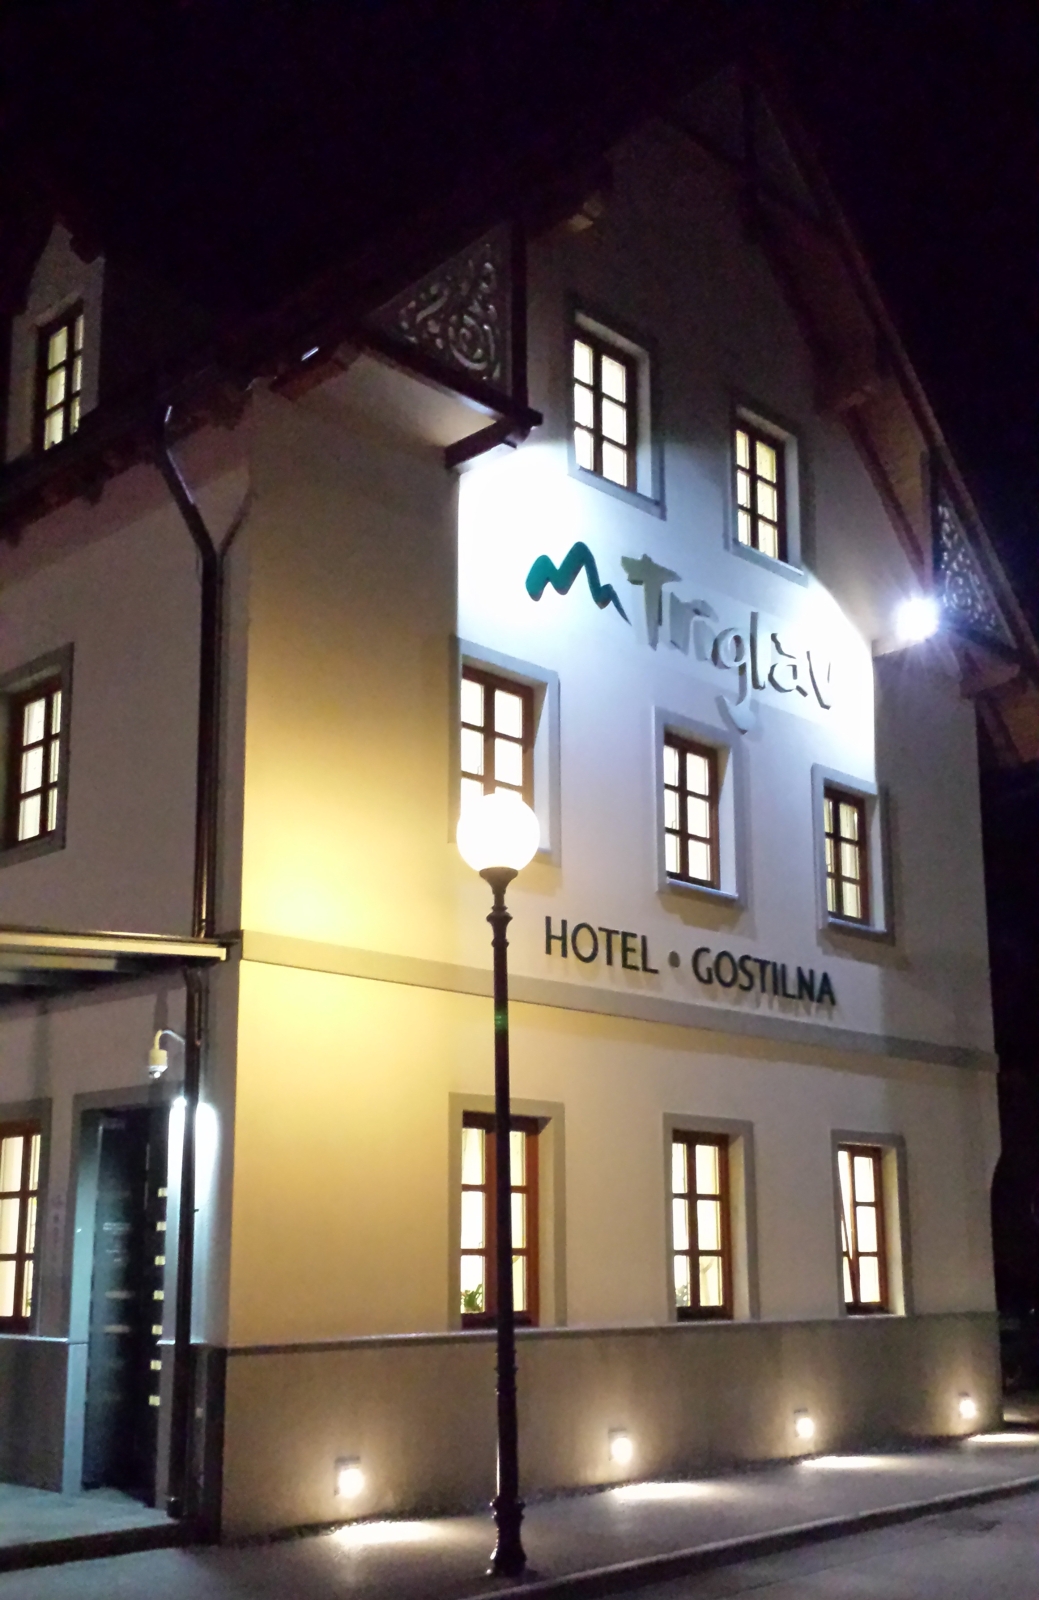 Hotel gostilna Triglav (Dobrna                             )